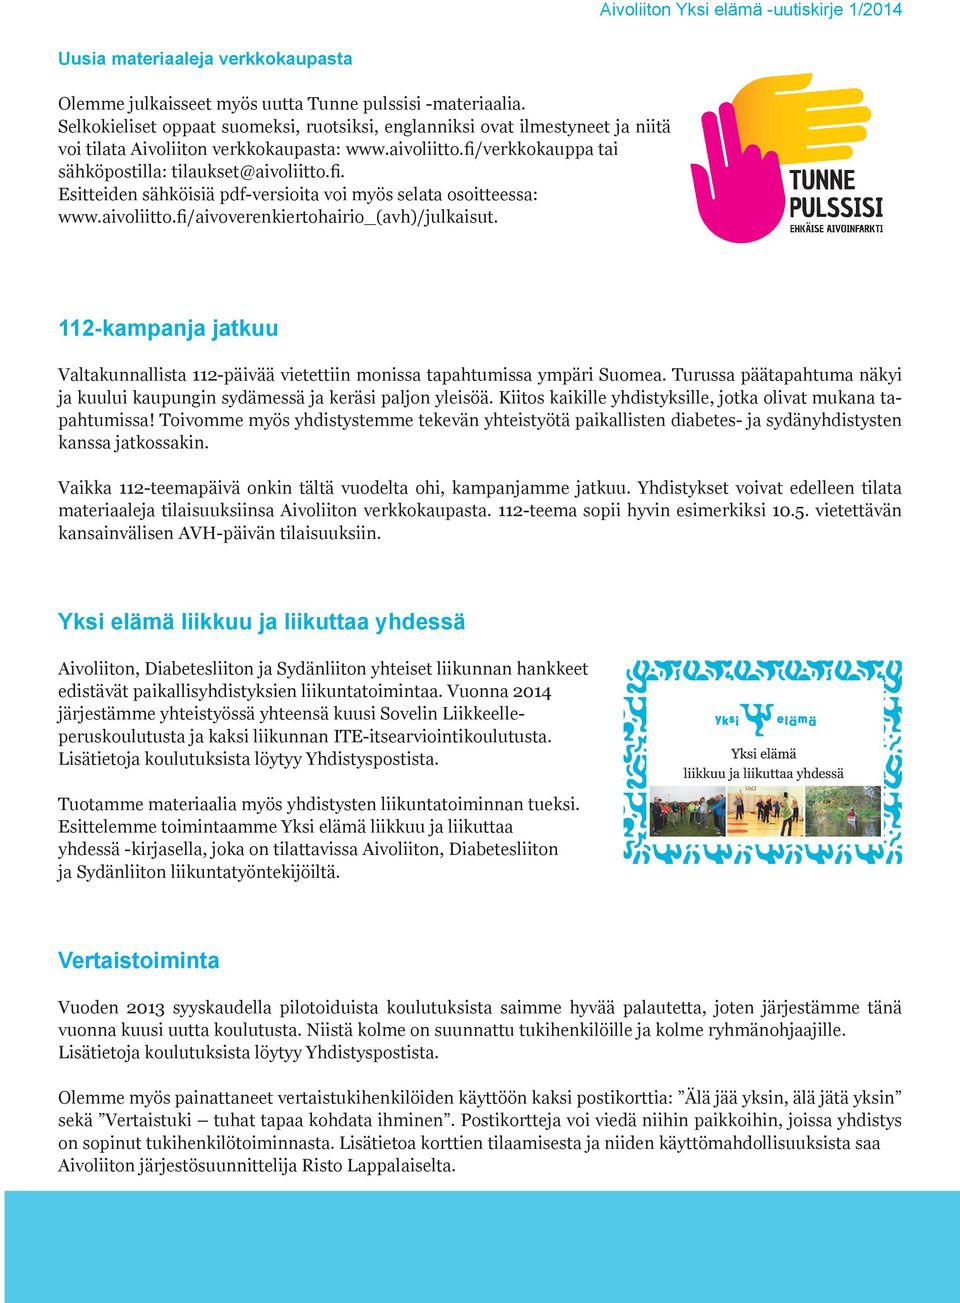 verkkokauppa tai sähköpostilla: tilaukset@aivoliitto.fi. Esitteiden sähköisiä pdf-versioita voi myös selata osoitteessa: www.aivoliitto.fi/aivoverenkiertohairio_(avh)/julkaisut.